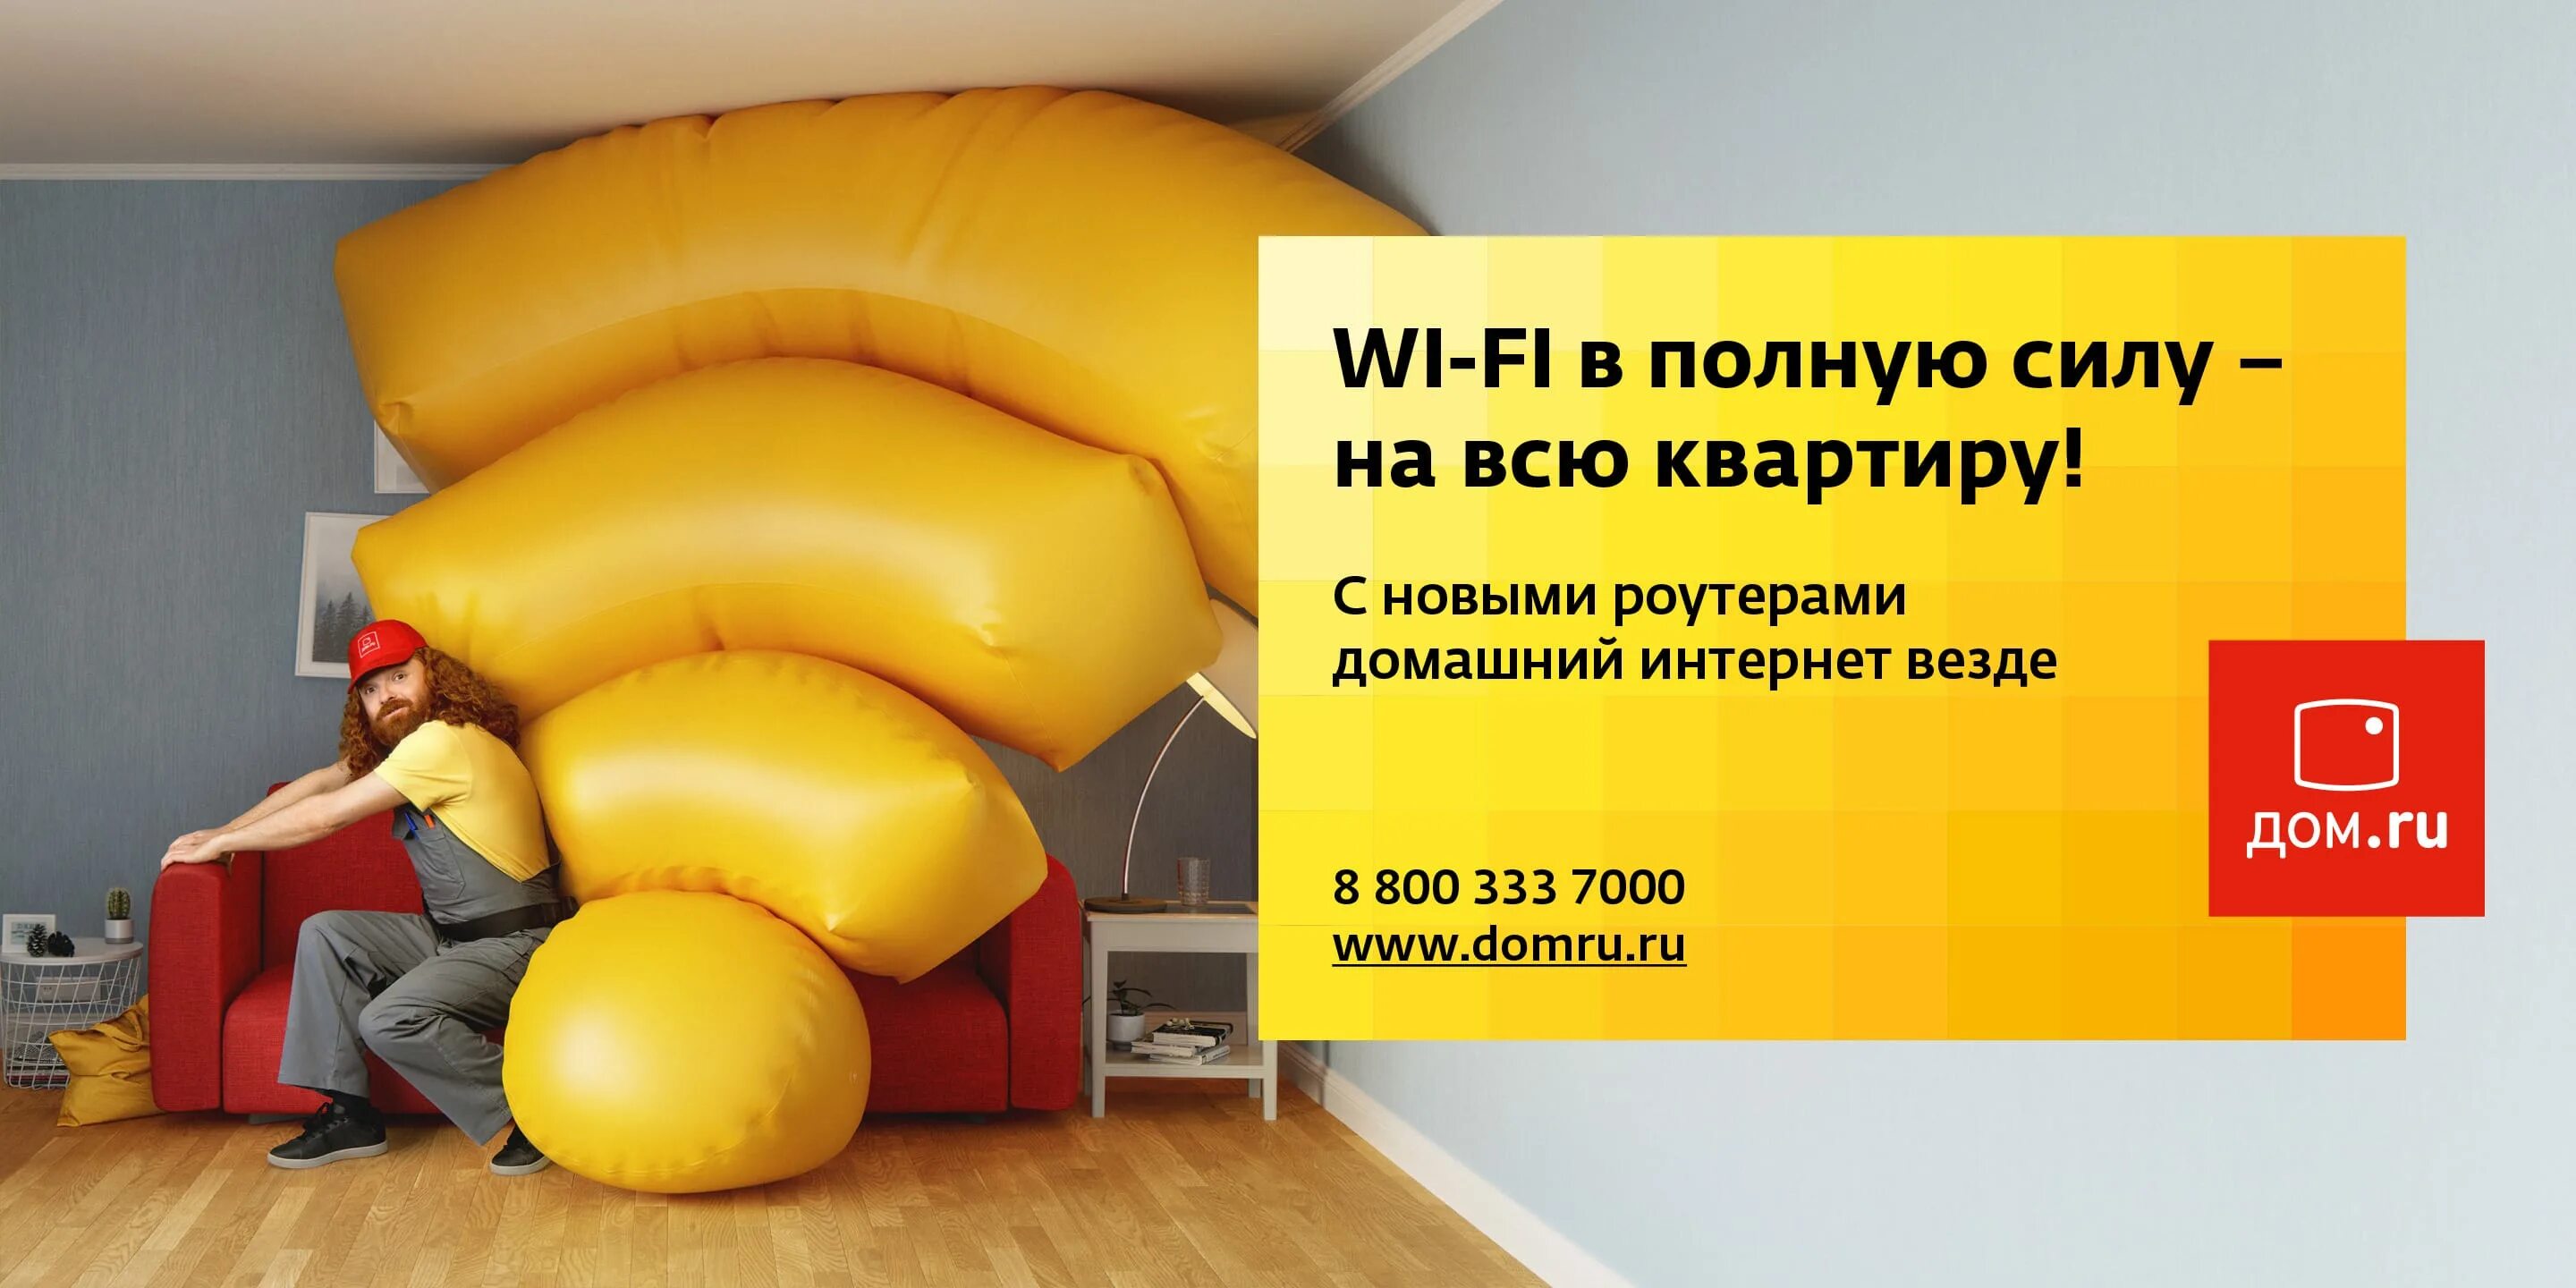 Дом ру реклама. Креативная реклама провайдера. Реклама домашнего интернета. Дом ру интернет.